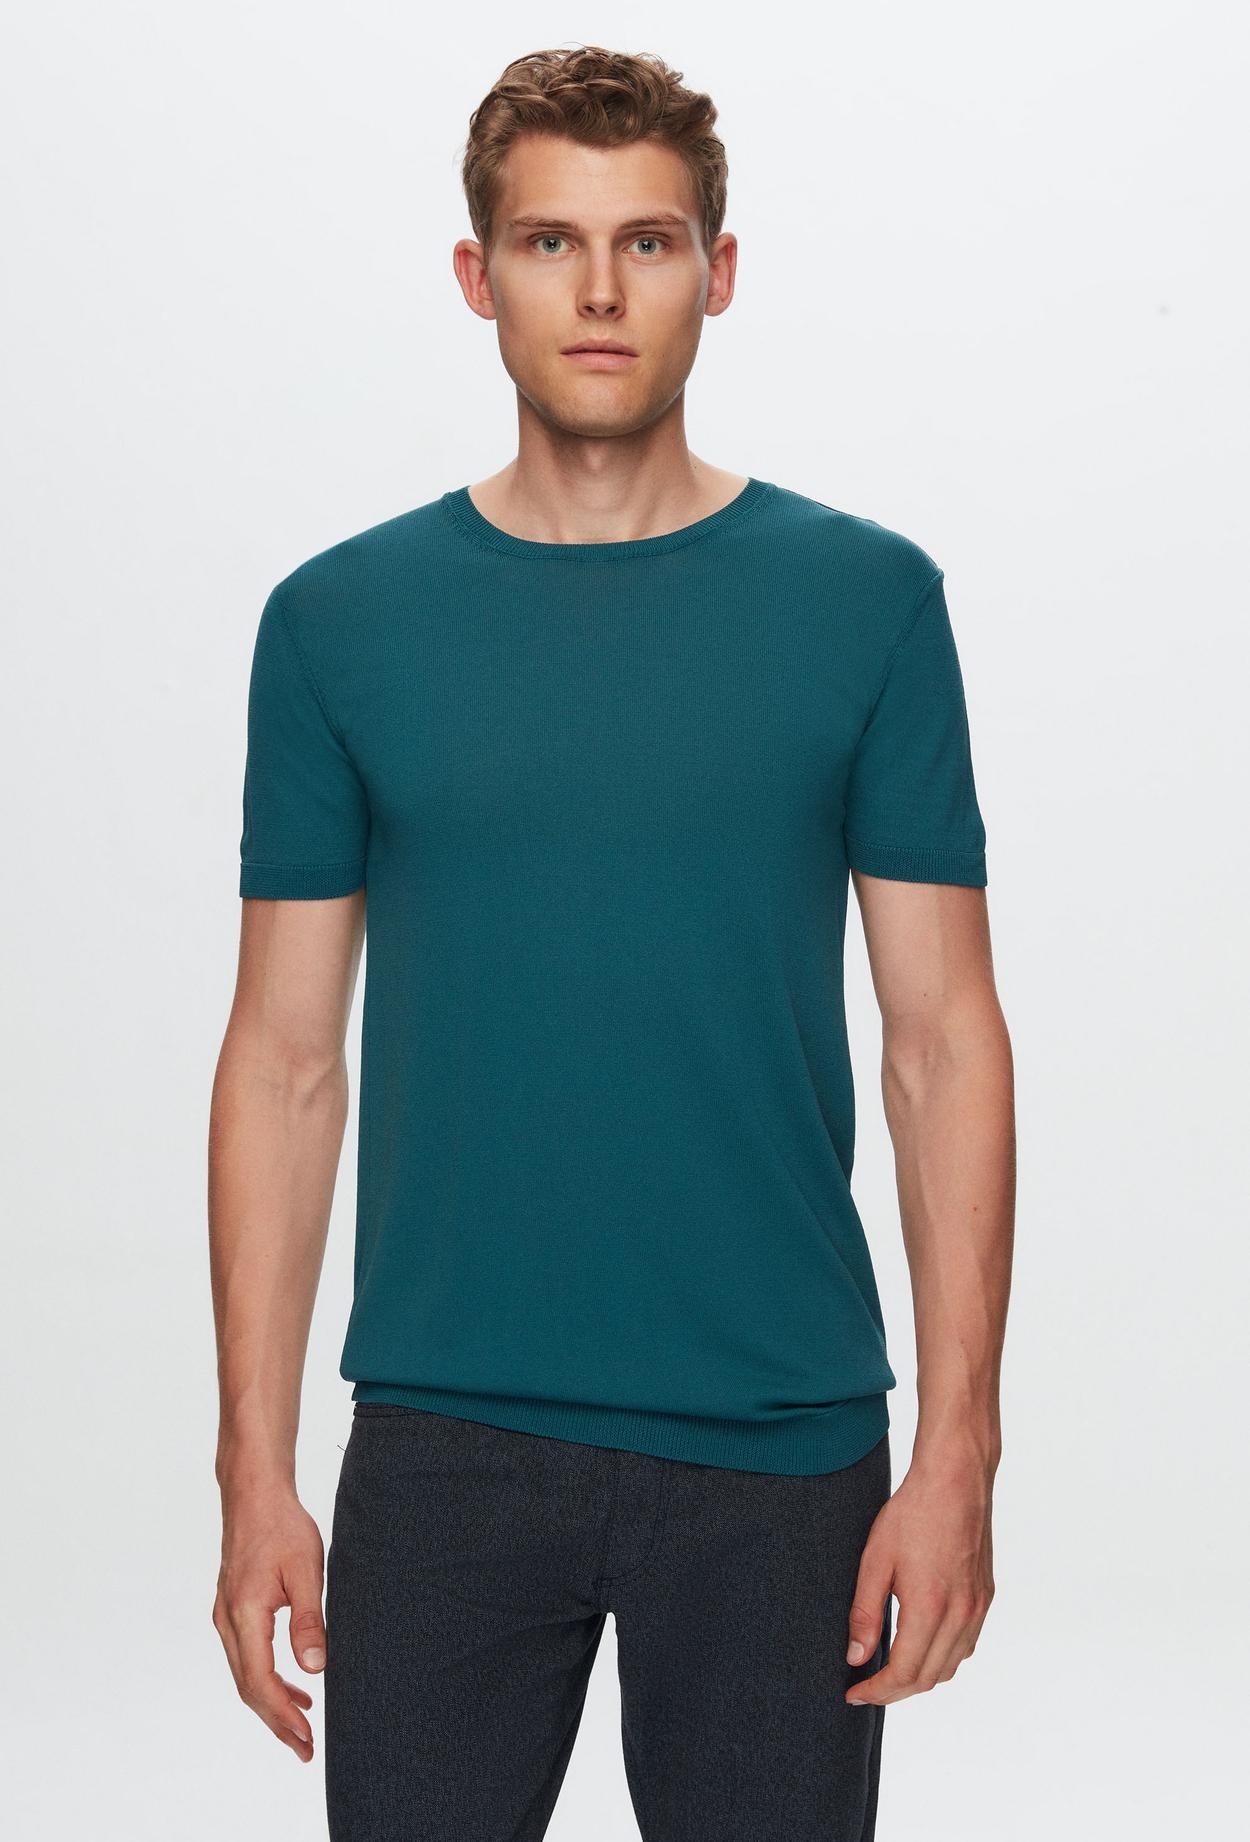 Twn Slim Fit Zümrüt Yeşili Düz Örgü Rayon Örme T-Shirt